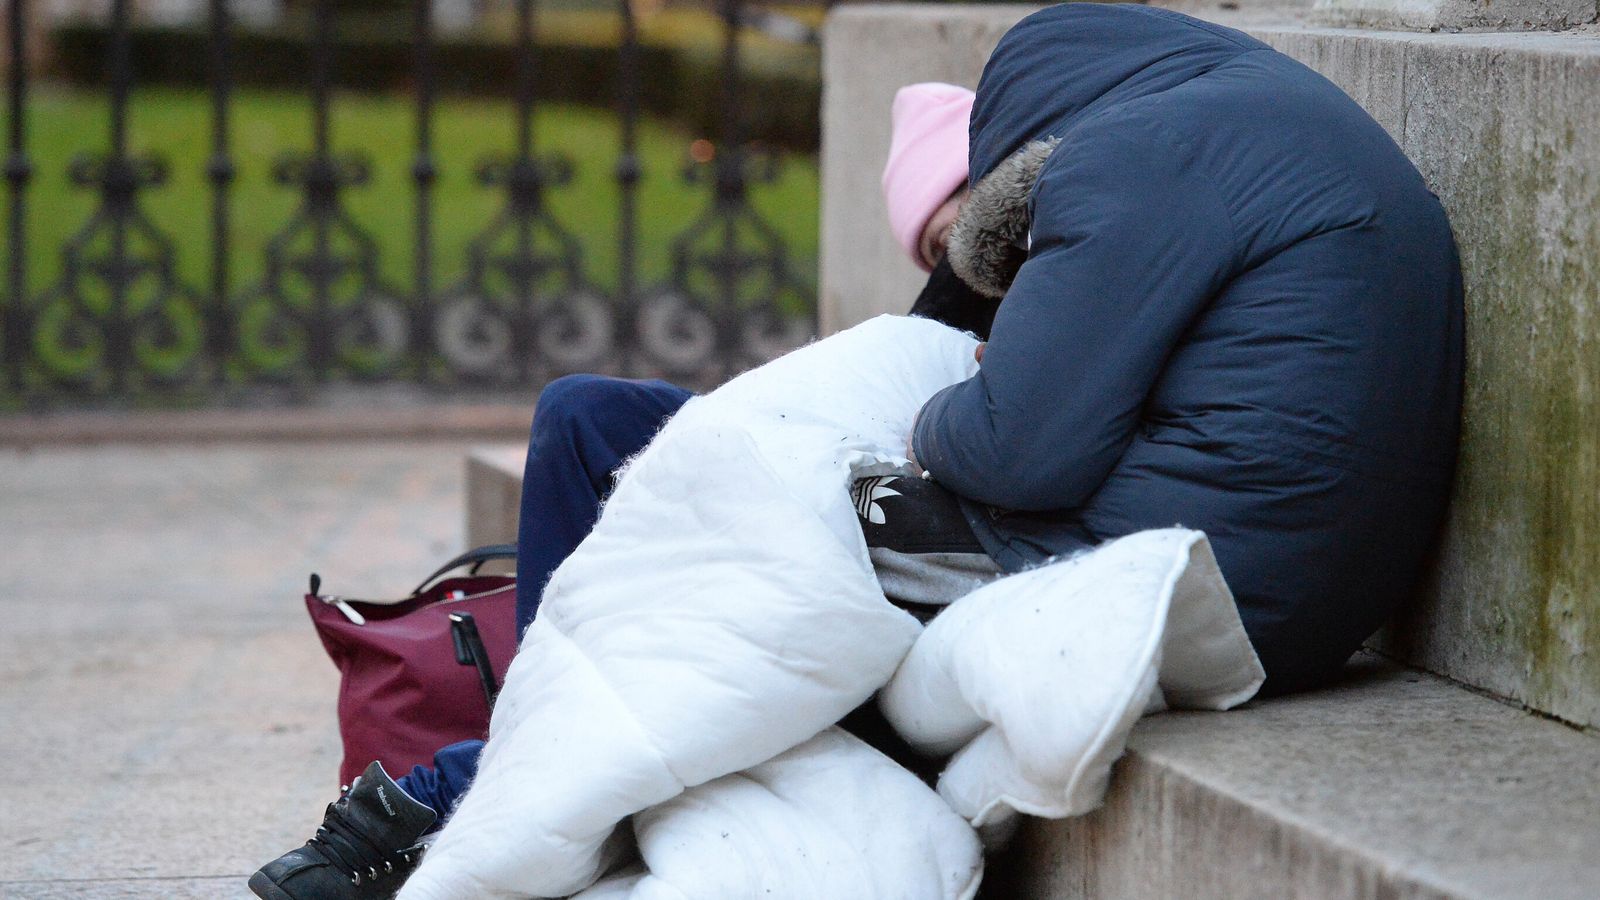 Правителството настоява, че „няма да криминализира“ бездомните хора след негативната реакция на законопроекта